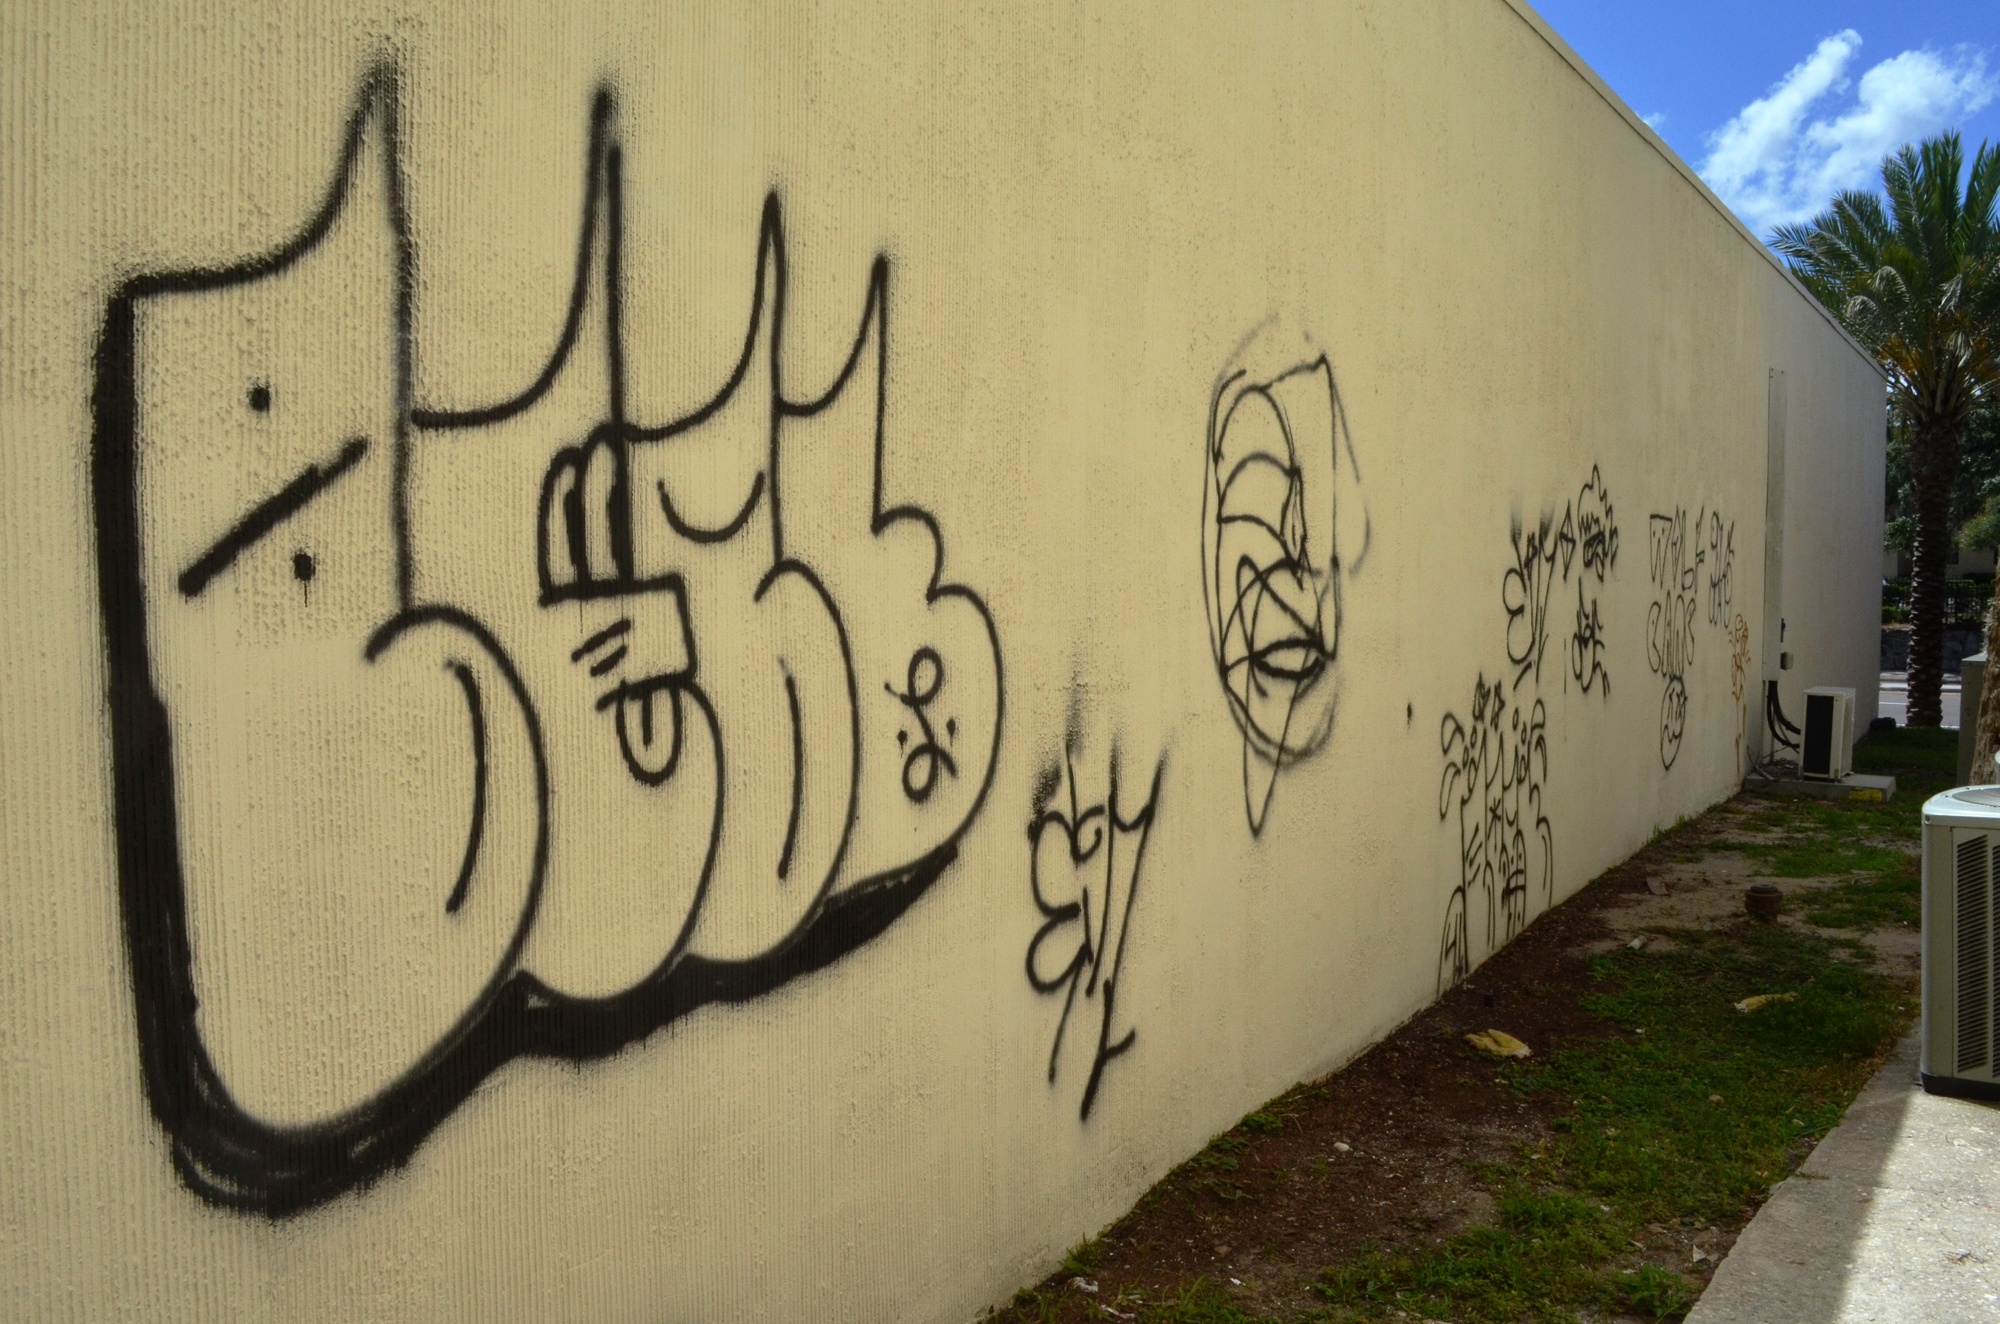 Graffiti has appeared in various locations near West Granada Boulevard.